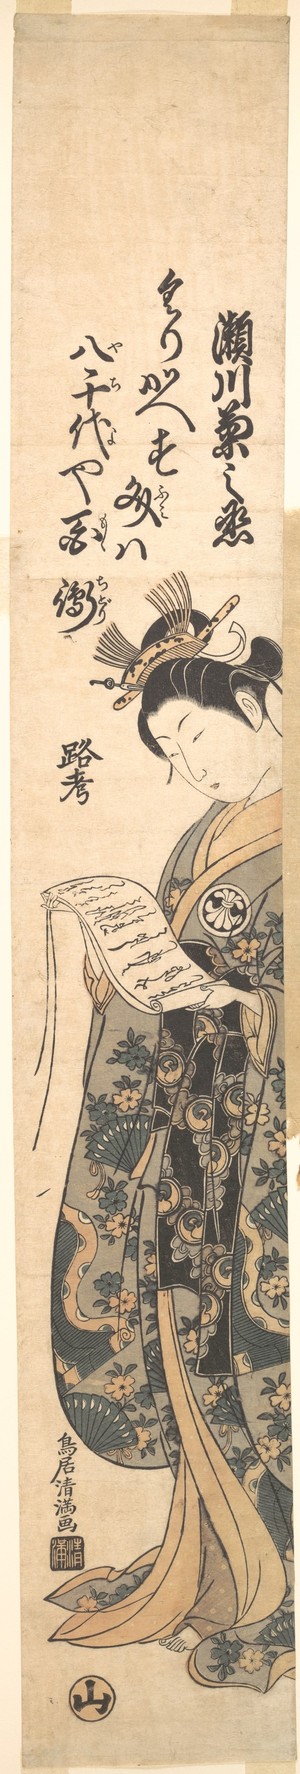 鳥居清満: Full Length Portrait of the Actor Segawa Kikunojo 2nd as a Woman Reading a Letter - メトロポリタン美術館